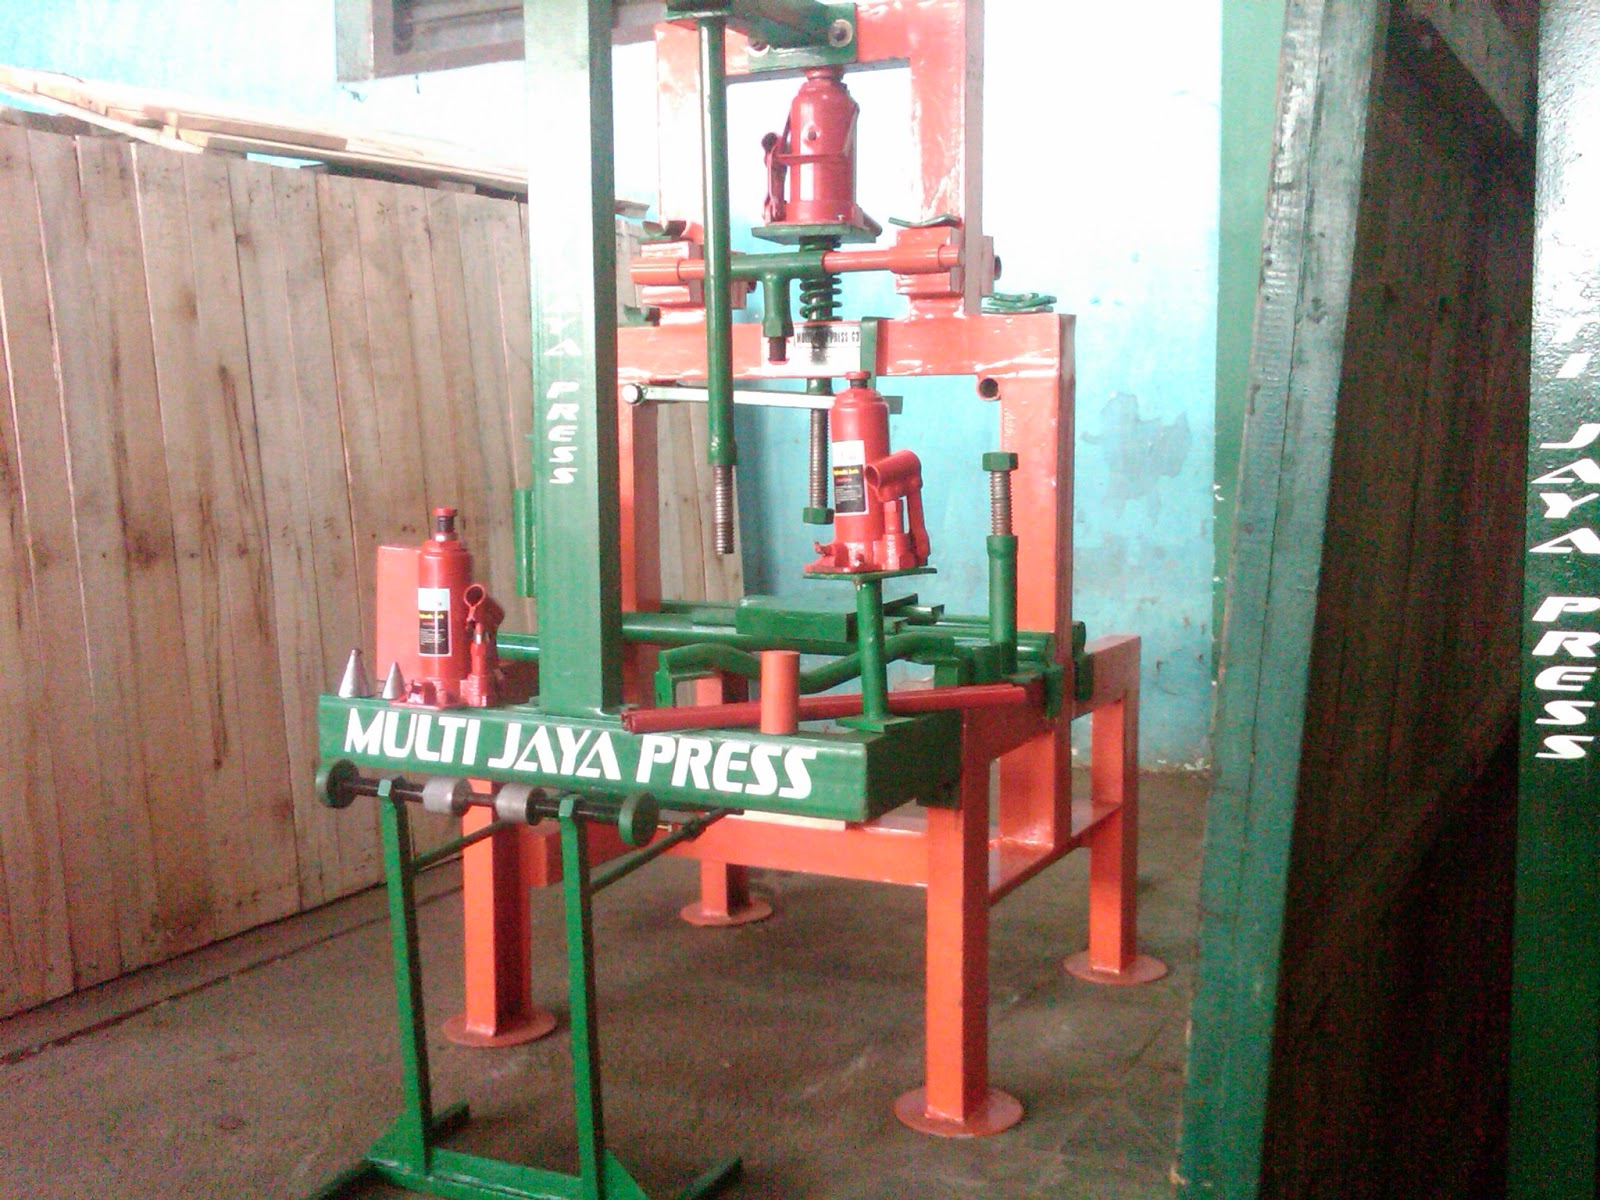 Jual Mesin Press Motor 08156988881 082322388881 Multi Jaya Press